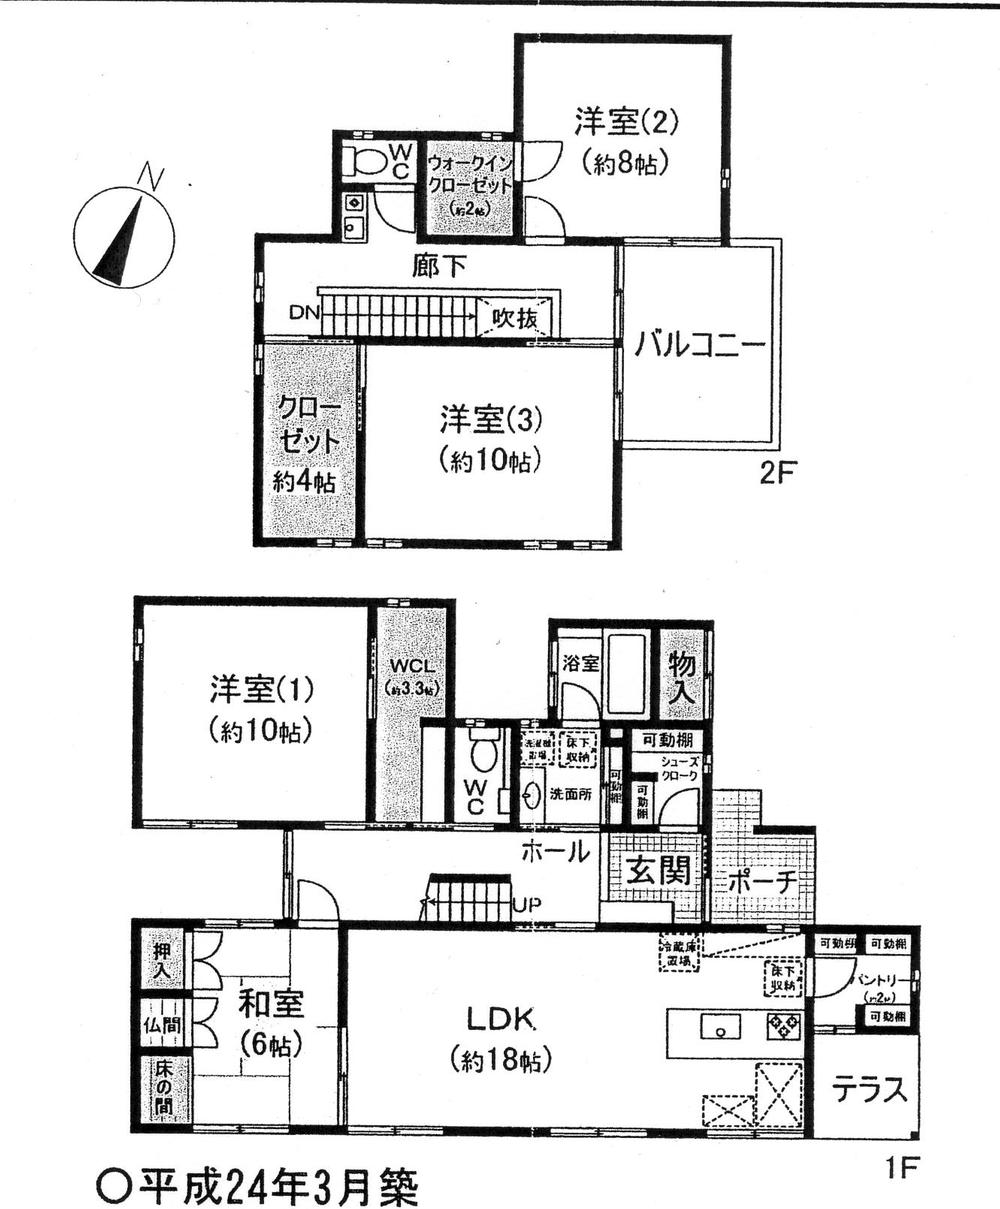 Floor plan. 45,800,000 yen, 4LDK + S (storeroom), Land area 265.32 sq m , Building area 147.48 sq m